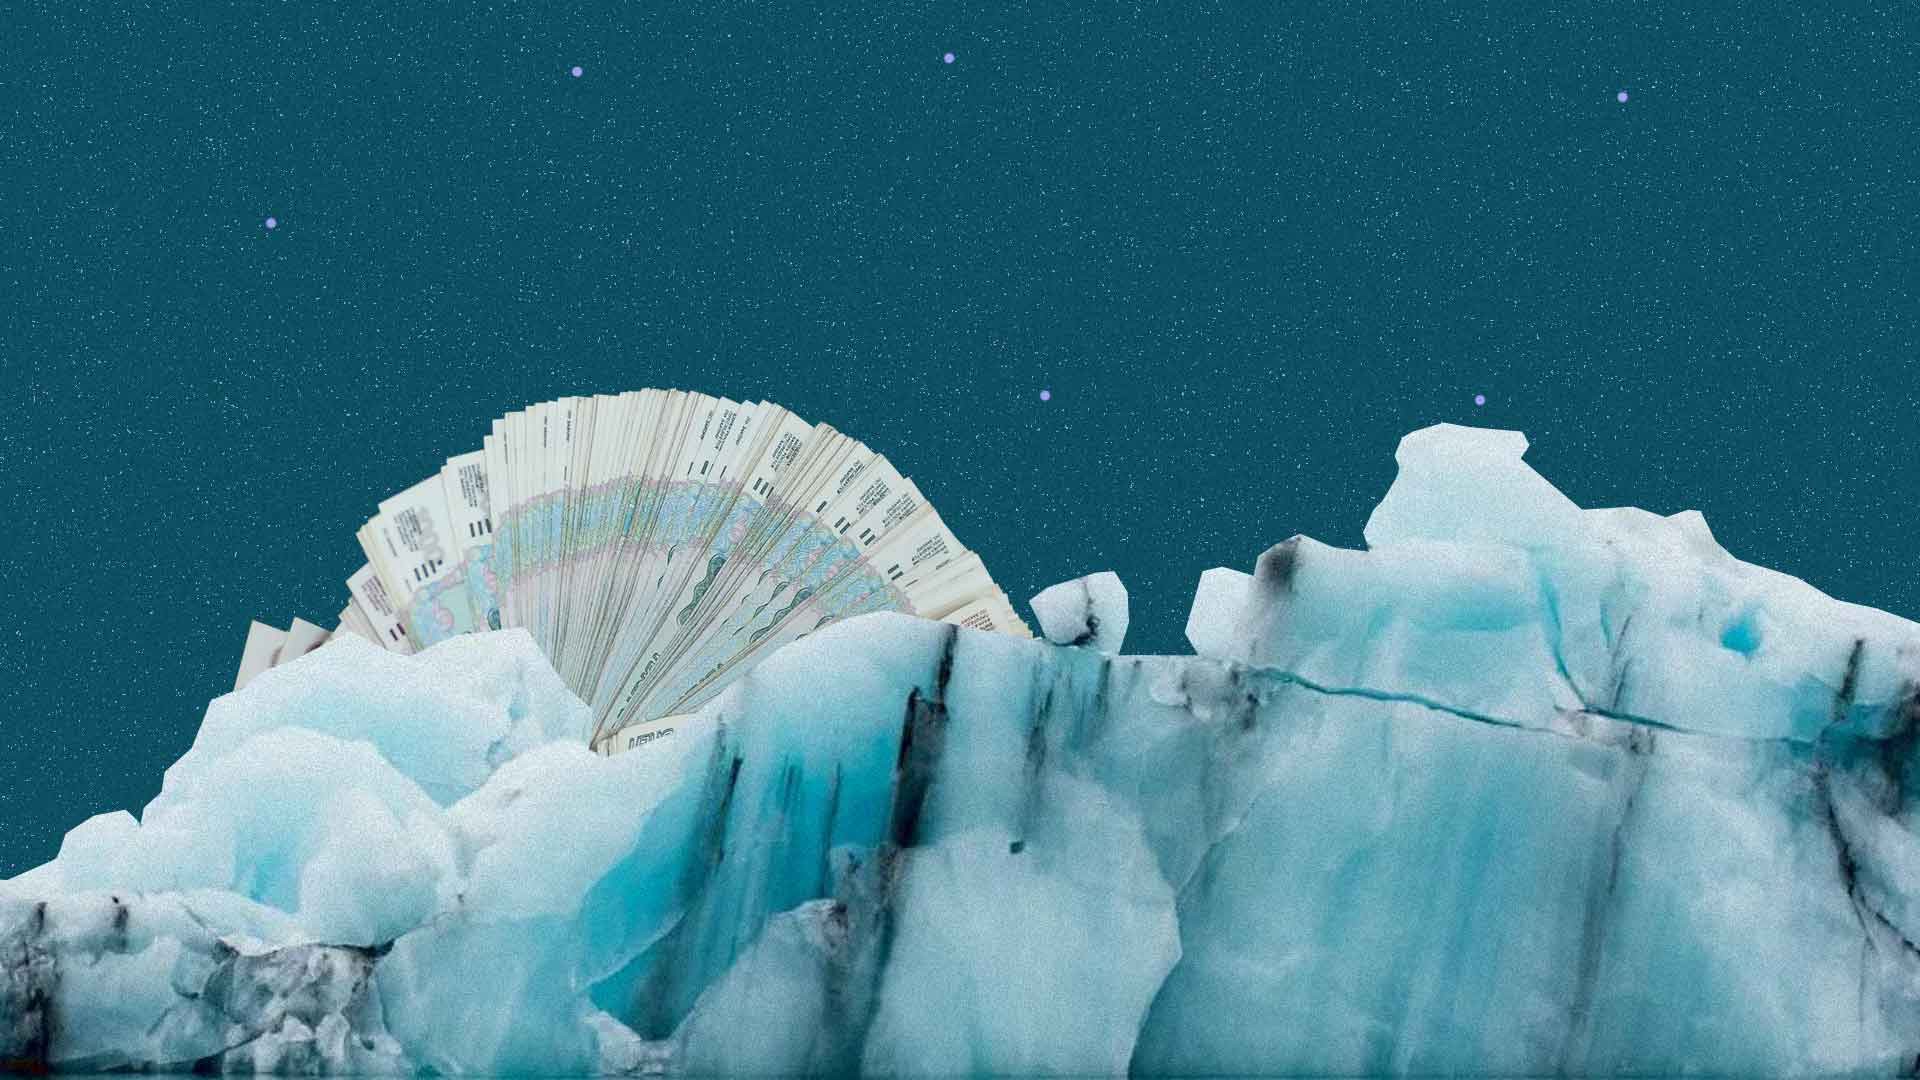 Dailystorm - Под созвездием Большой Медведицы. Как государство поддержит малый и средний бизнес в Арктике